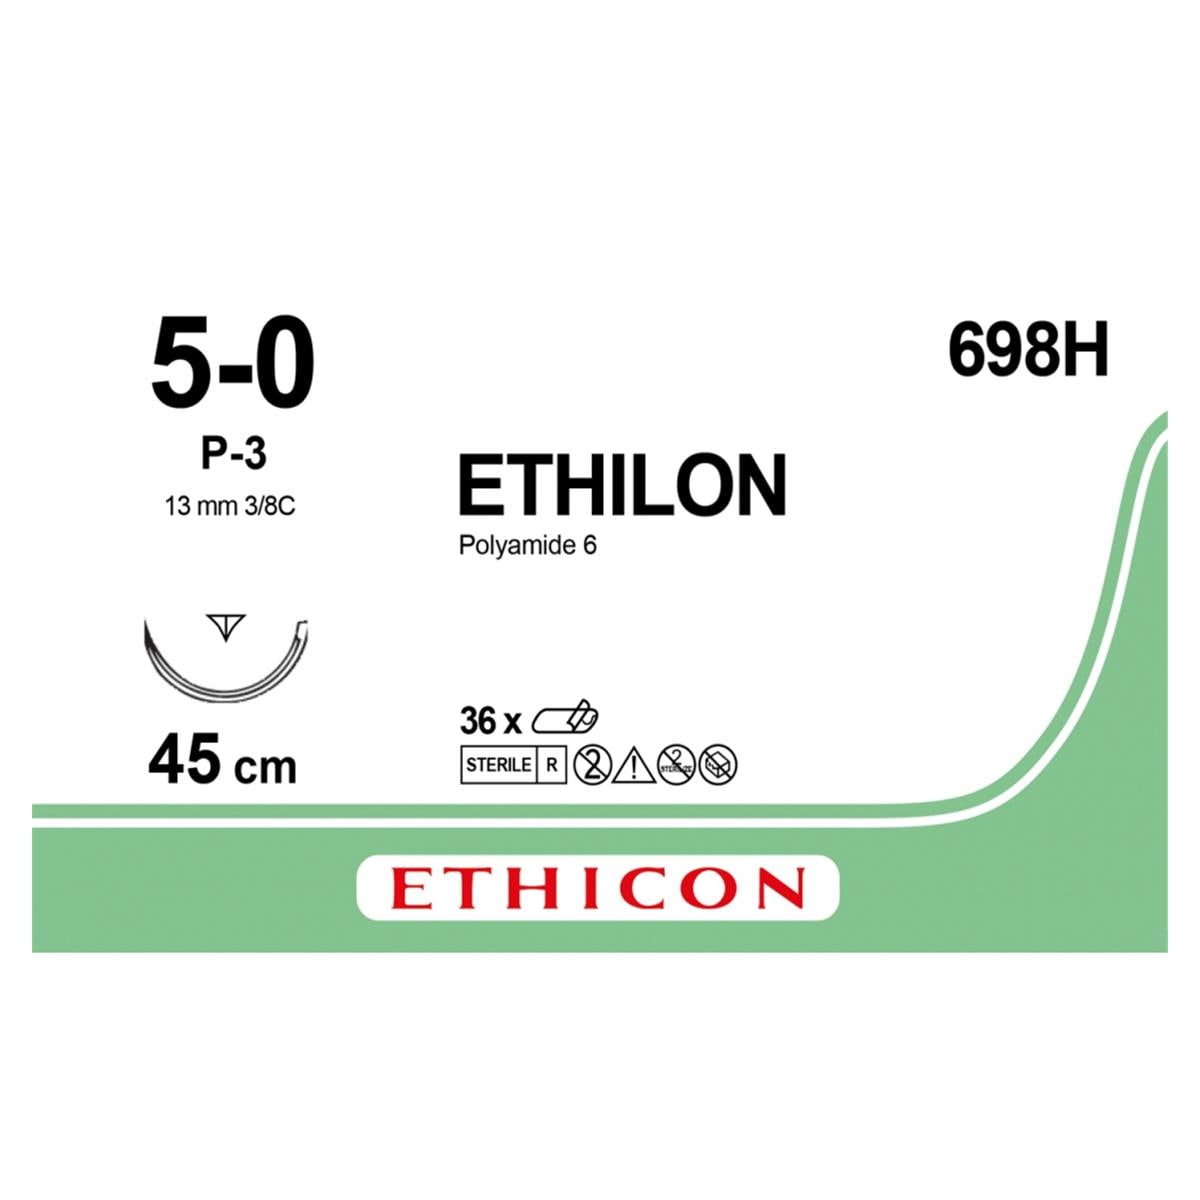 Ethilon - Lengte 45cm, 36 stuks 5-0, naald P3 - 698H